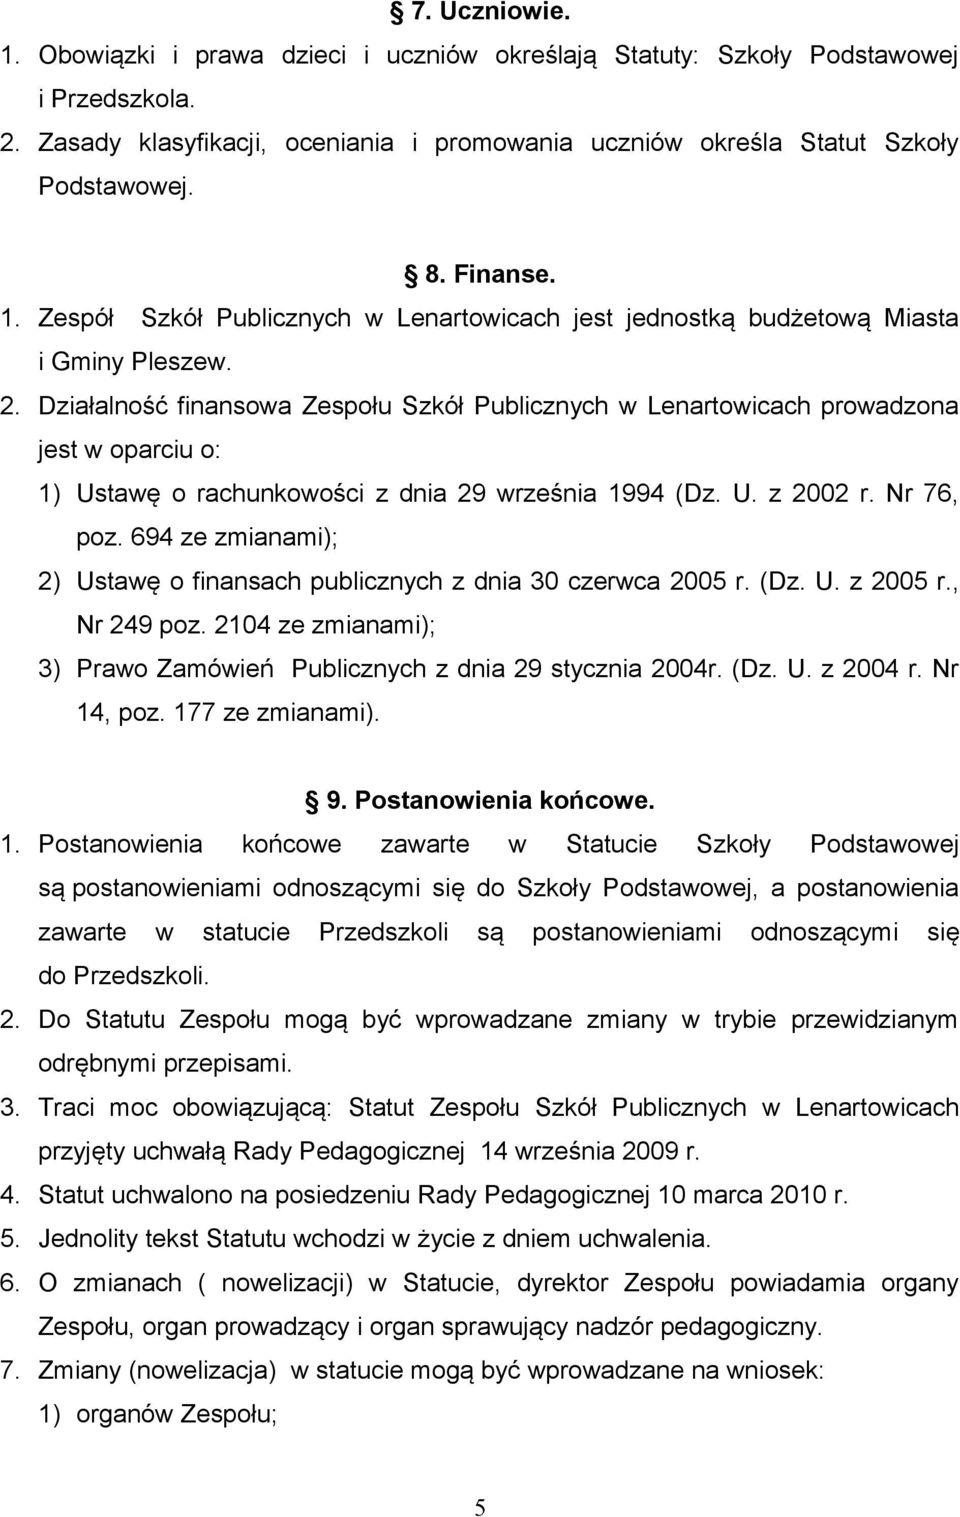 Działalność finansowa Zespołu Szkół Publicznych w Lenartowicach prowadzona jest w oparciu o: 1) Ustawę o rachunkowości z dnia 29 września 1994 (Dz. U. z 2002 r. Nr 76, poz.